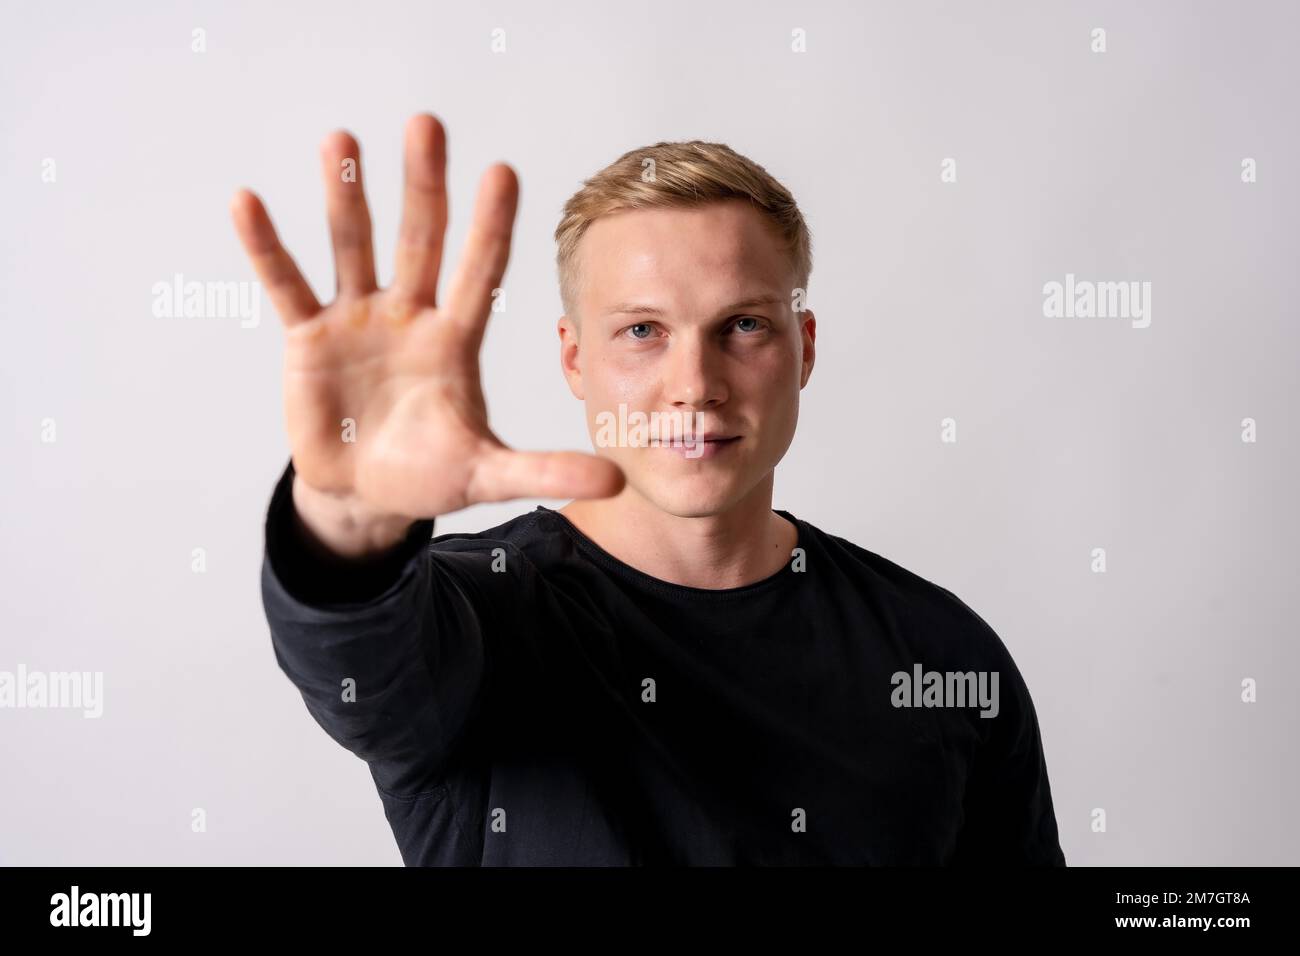 Attraktives blondes deutsches Model in einem schwarzen Trikot auf weißem Hintergrund, stoppt Rassismus, stoppt Homophobie Stockfoto